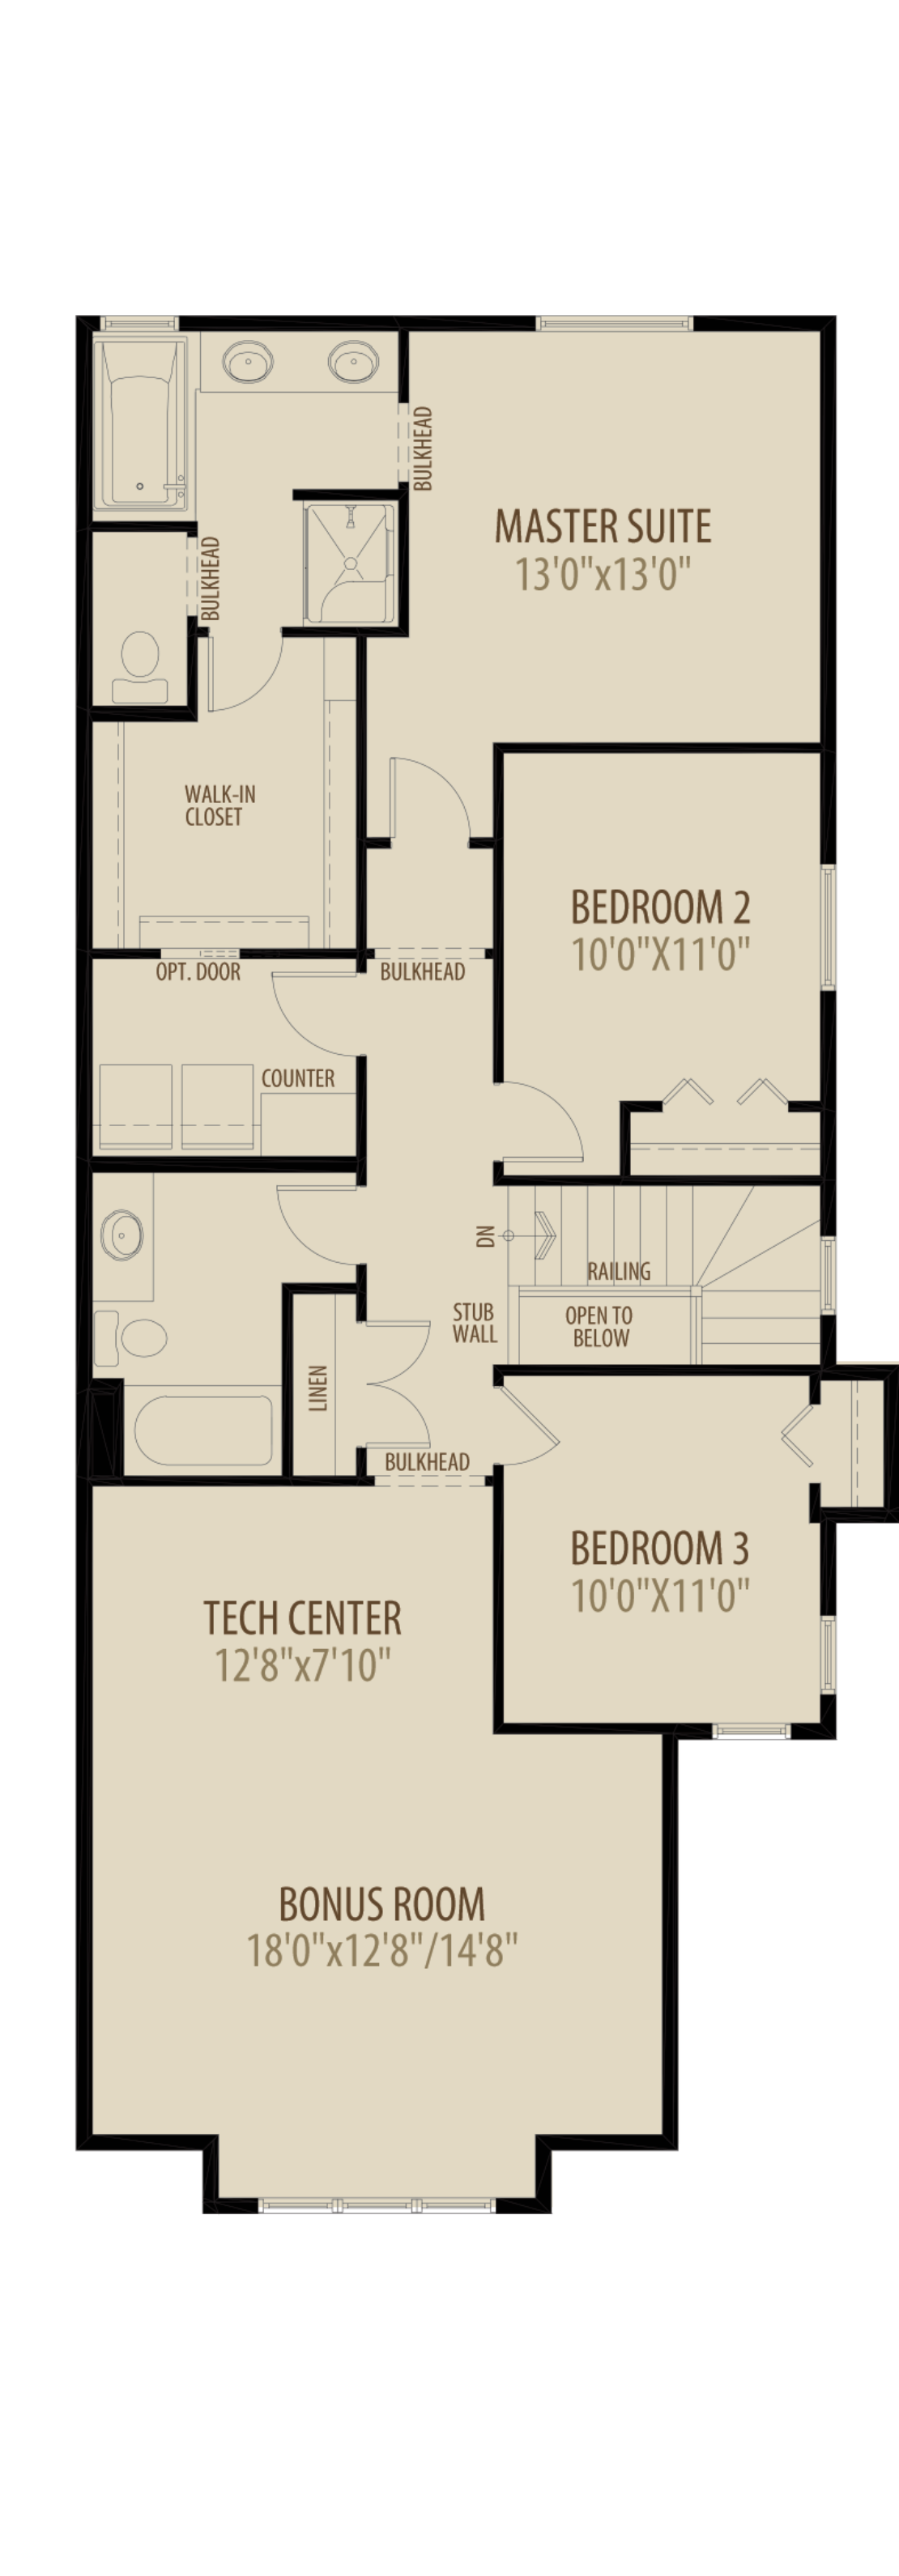 Optional Upper Floor 2 adds 246 sq ft